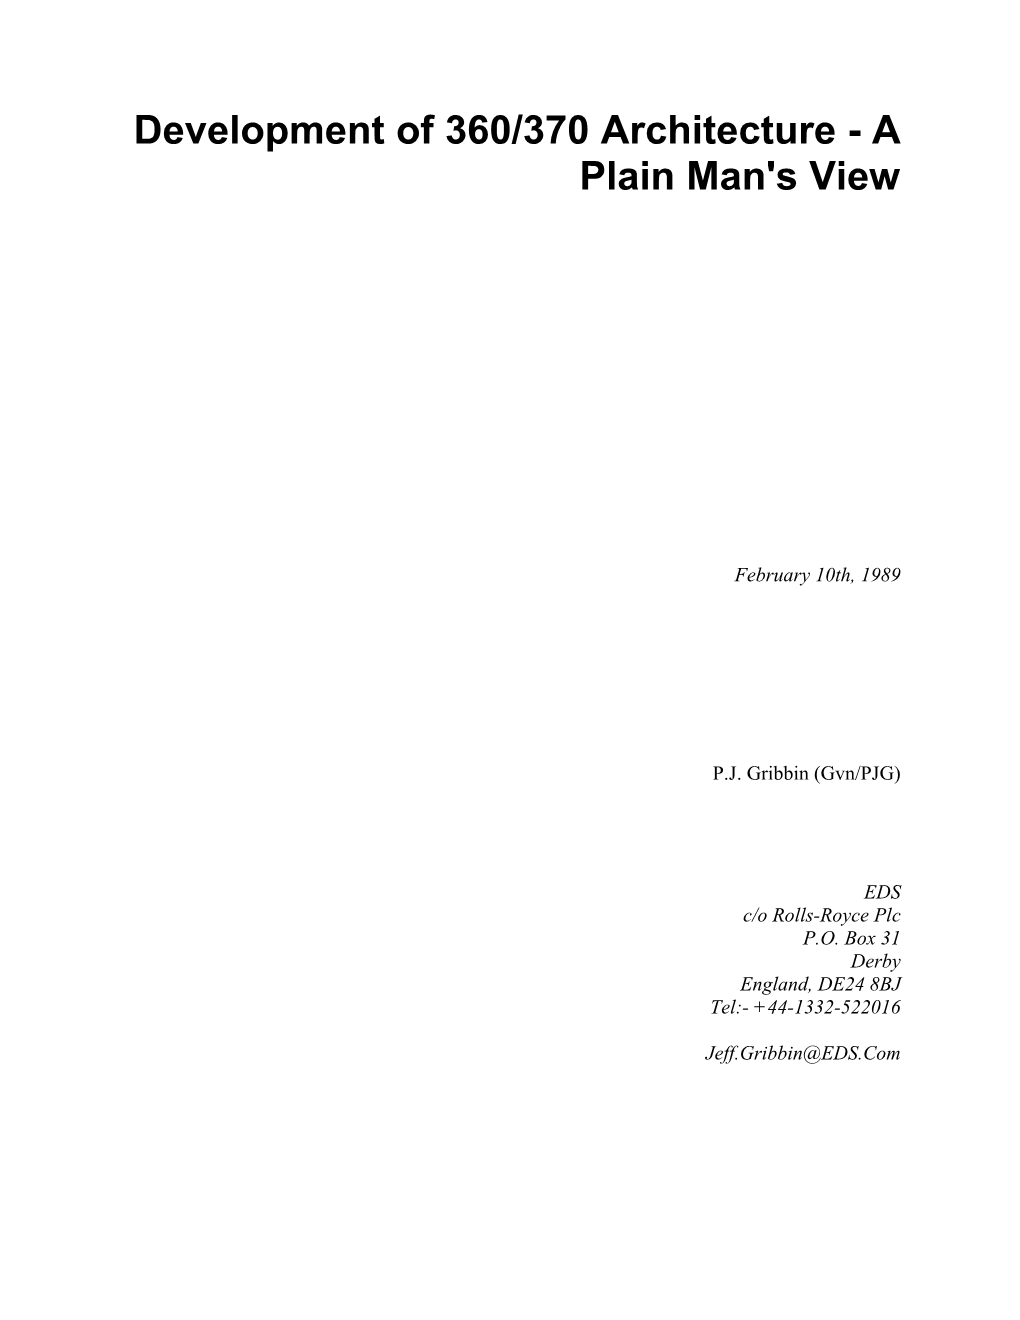 Development of 360/370 Architecture - a Plain Man's View